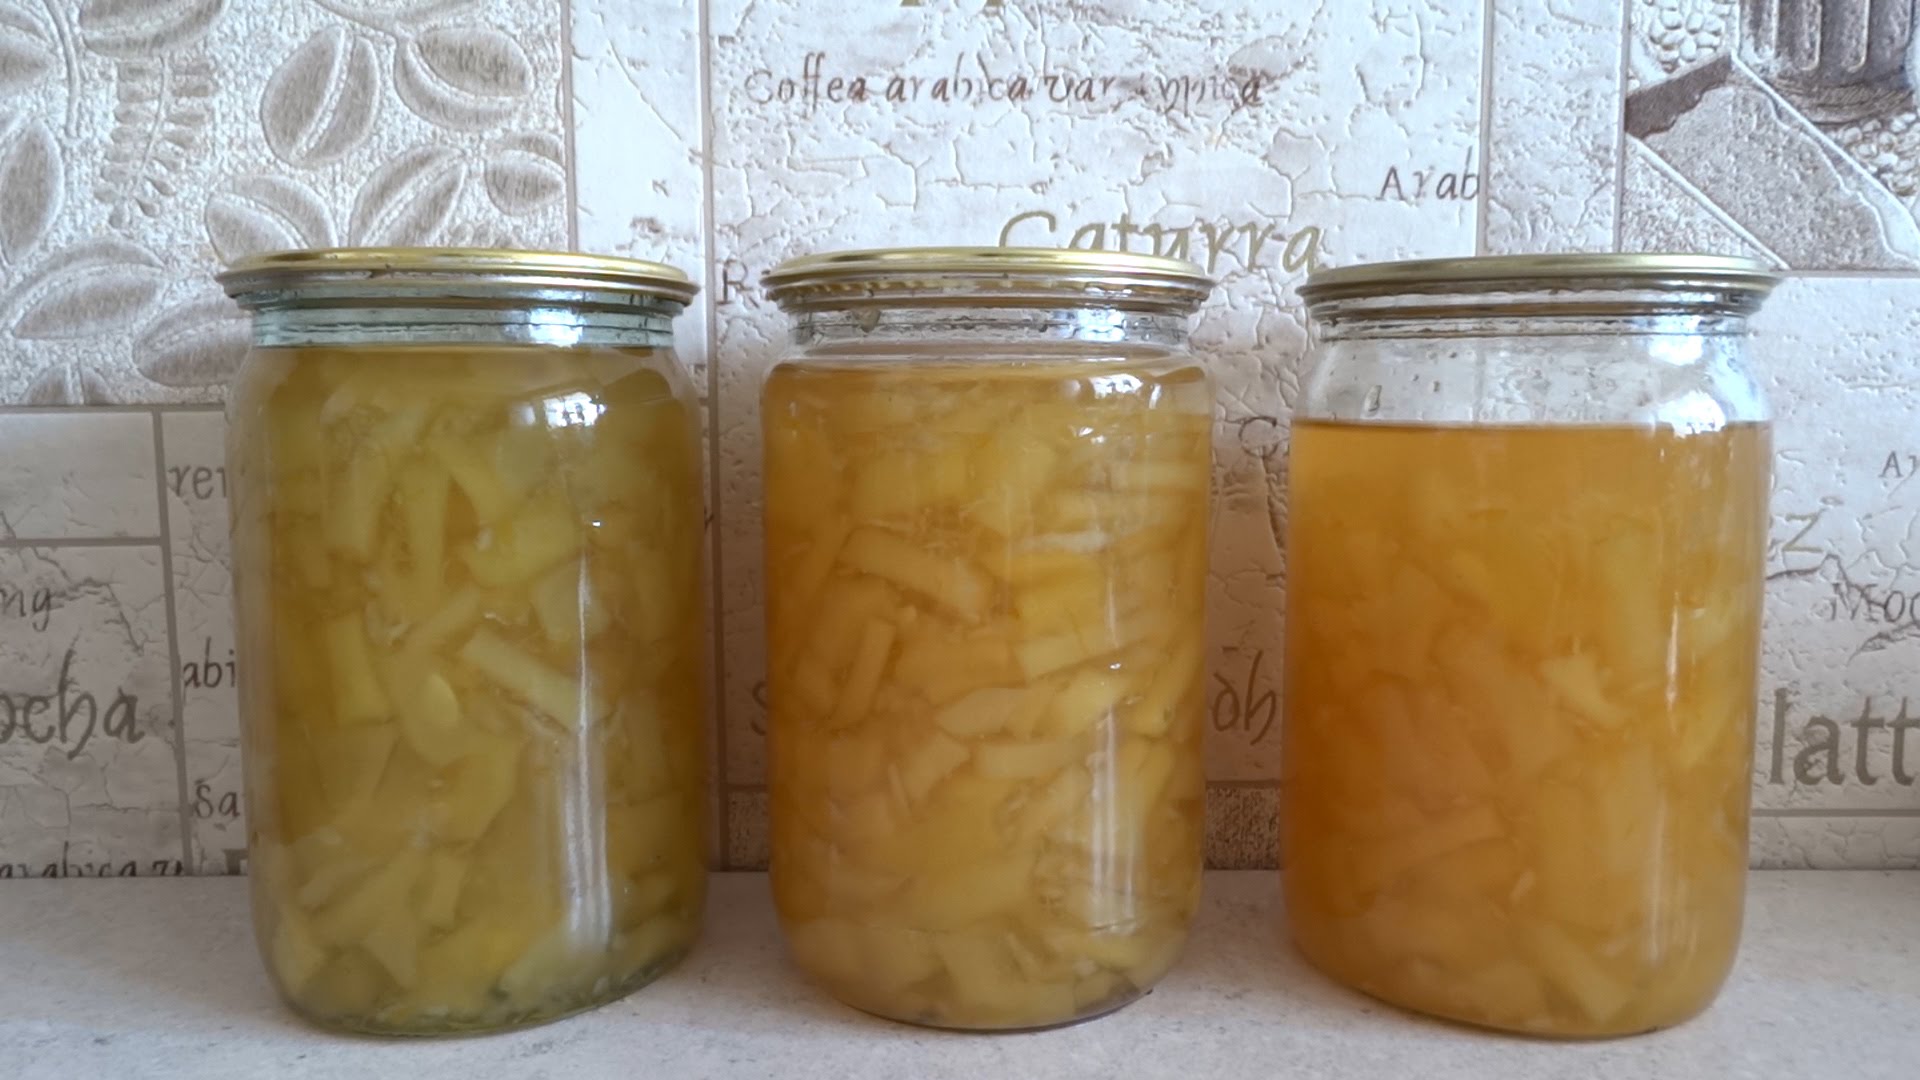 kak prigotovit varene iz kabachkov s limonom i apelsinom21 Як приготувати варення з кабачків з лимоном і апельсином